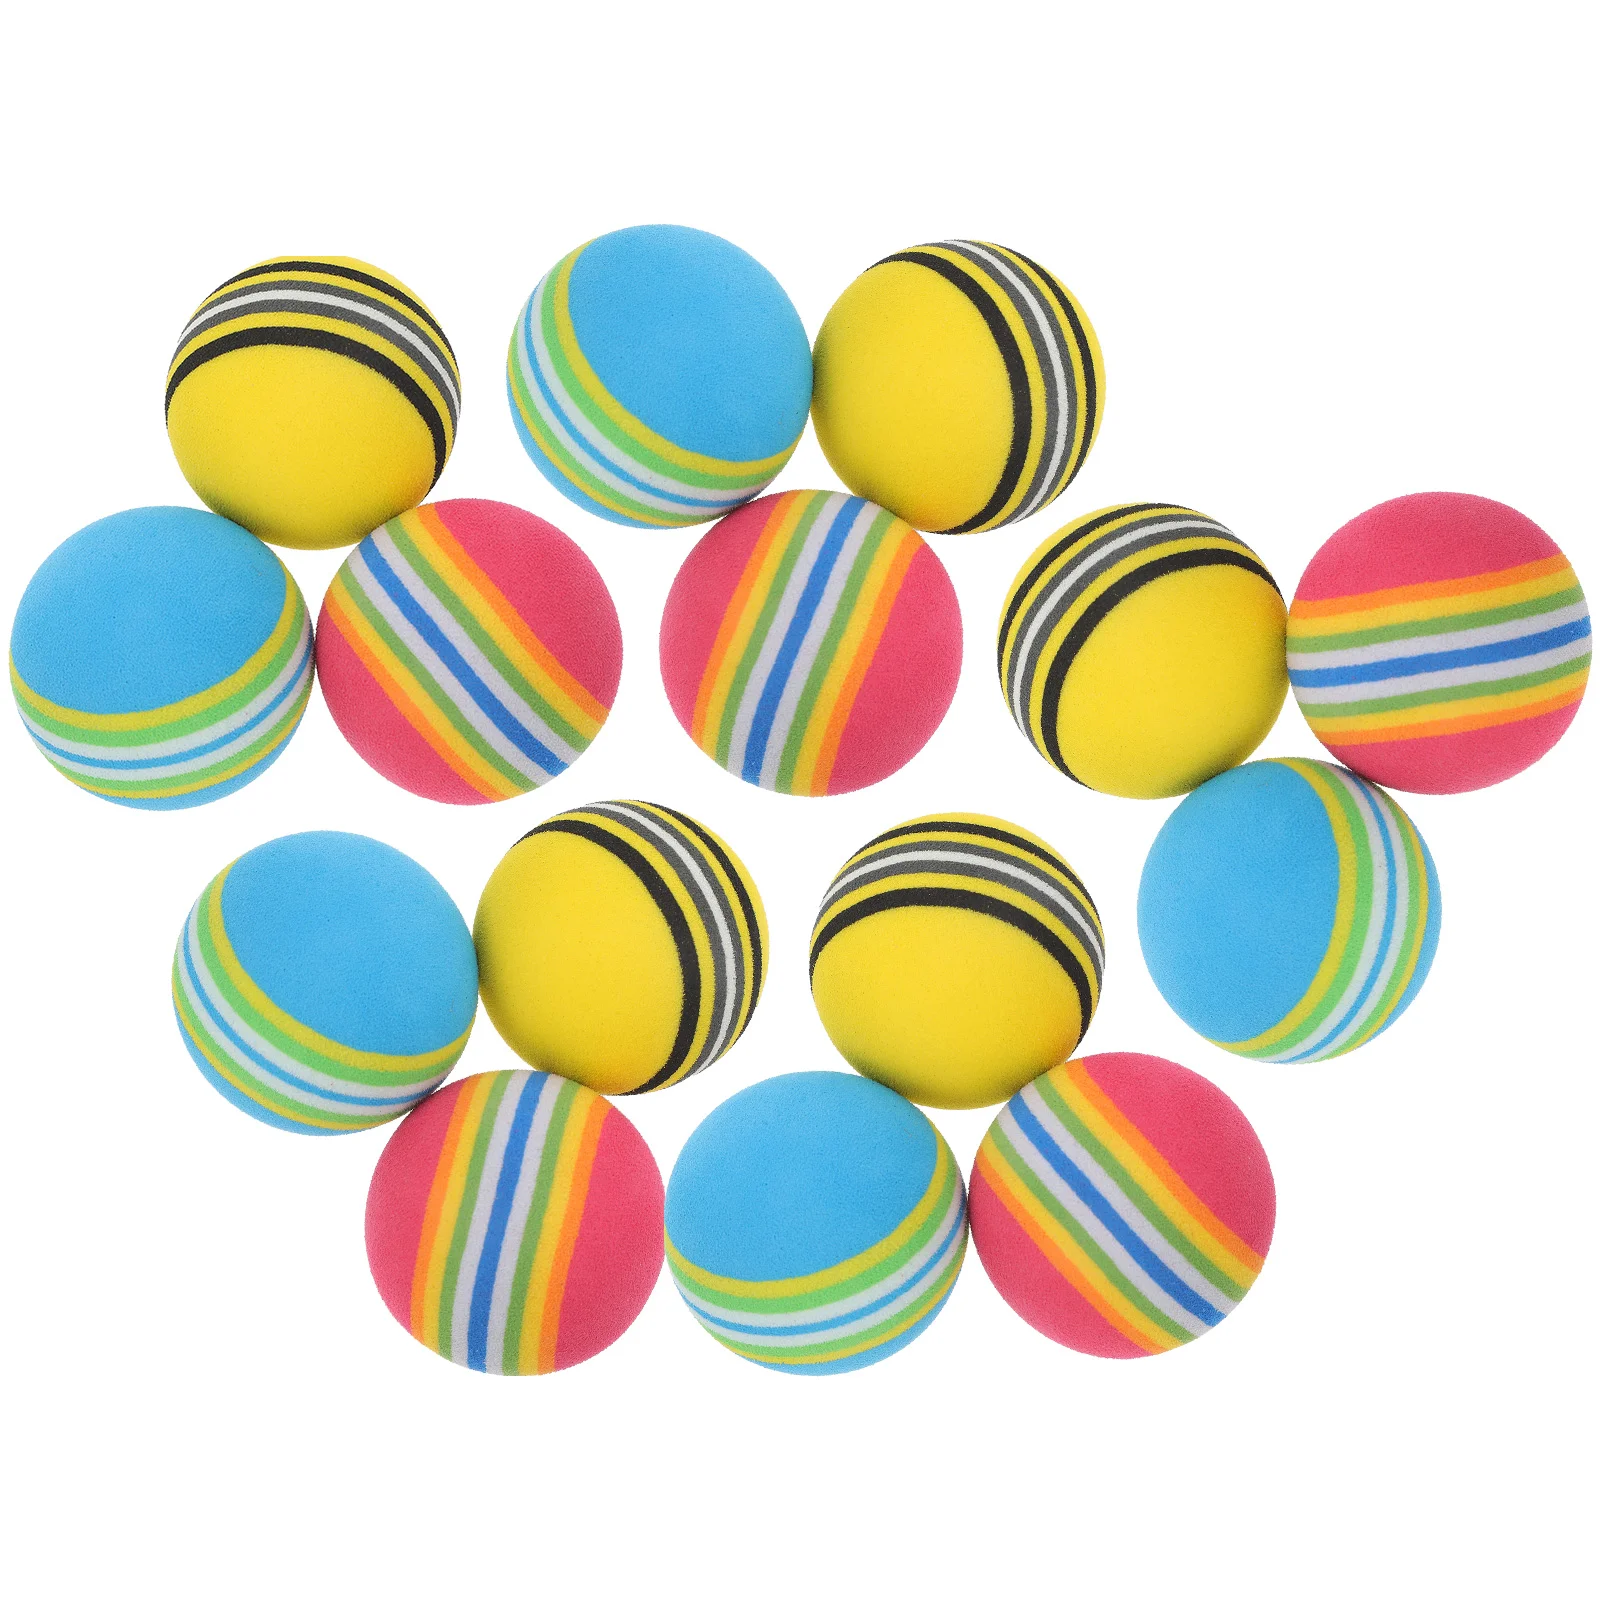 Тренировочные мячи: 30шт Eva-шариков для внутренних красочных интерактивных игрушек для тренировок на открытом воздухе на заднем дворе.